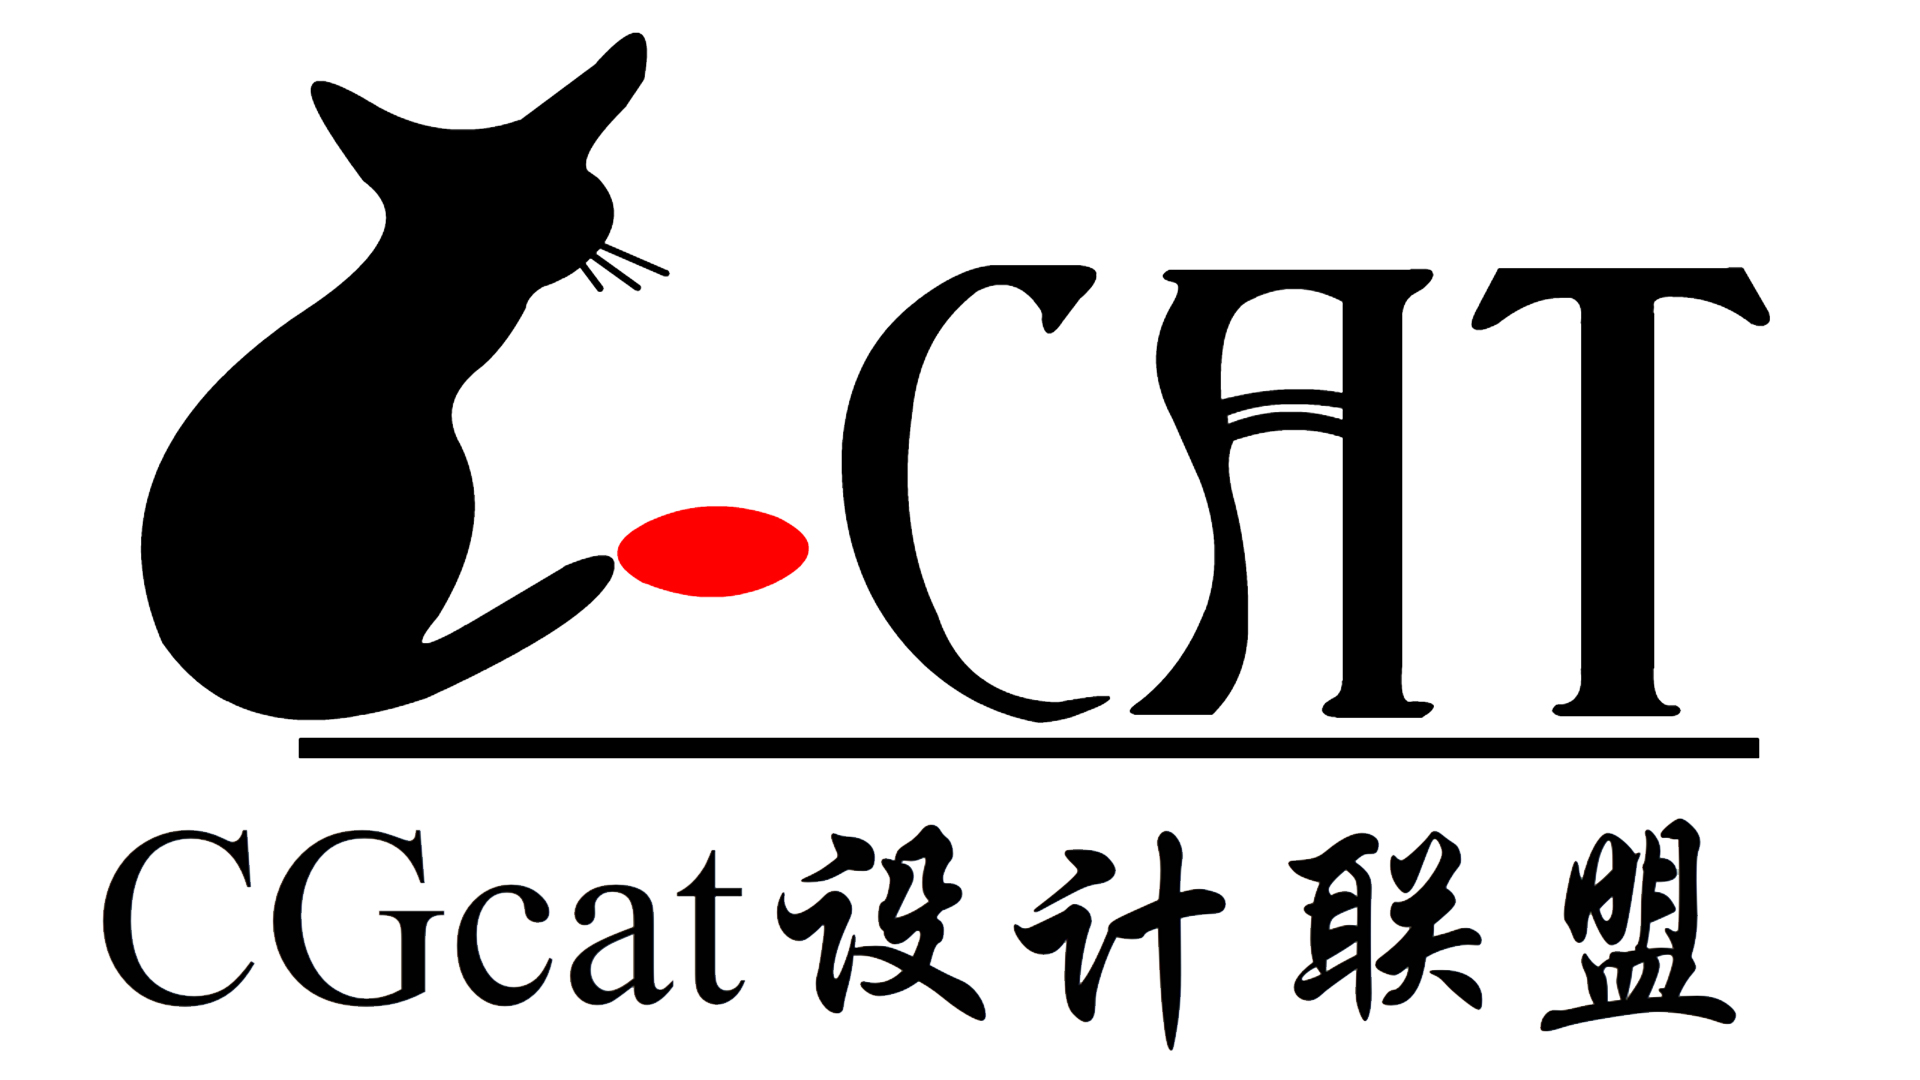 CGcat設計聯盟